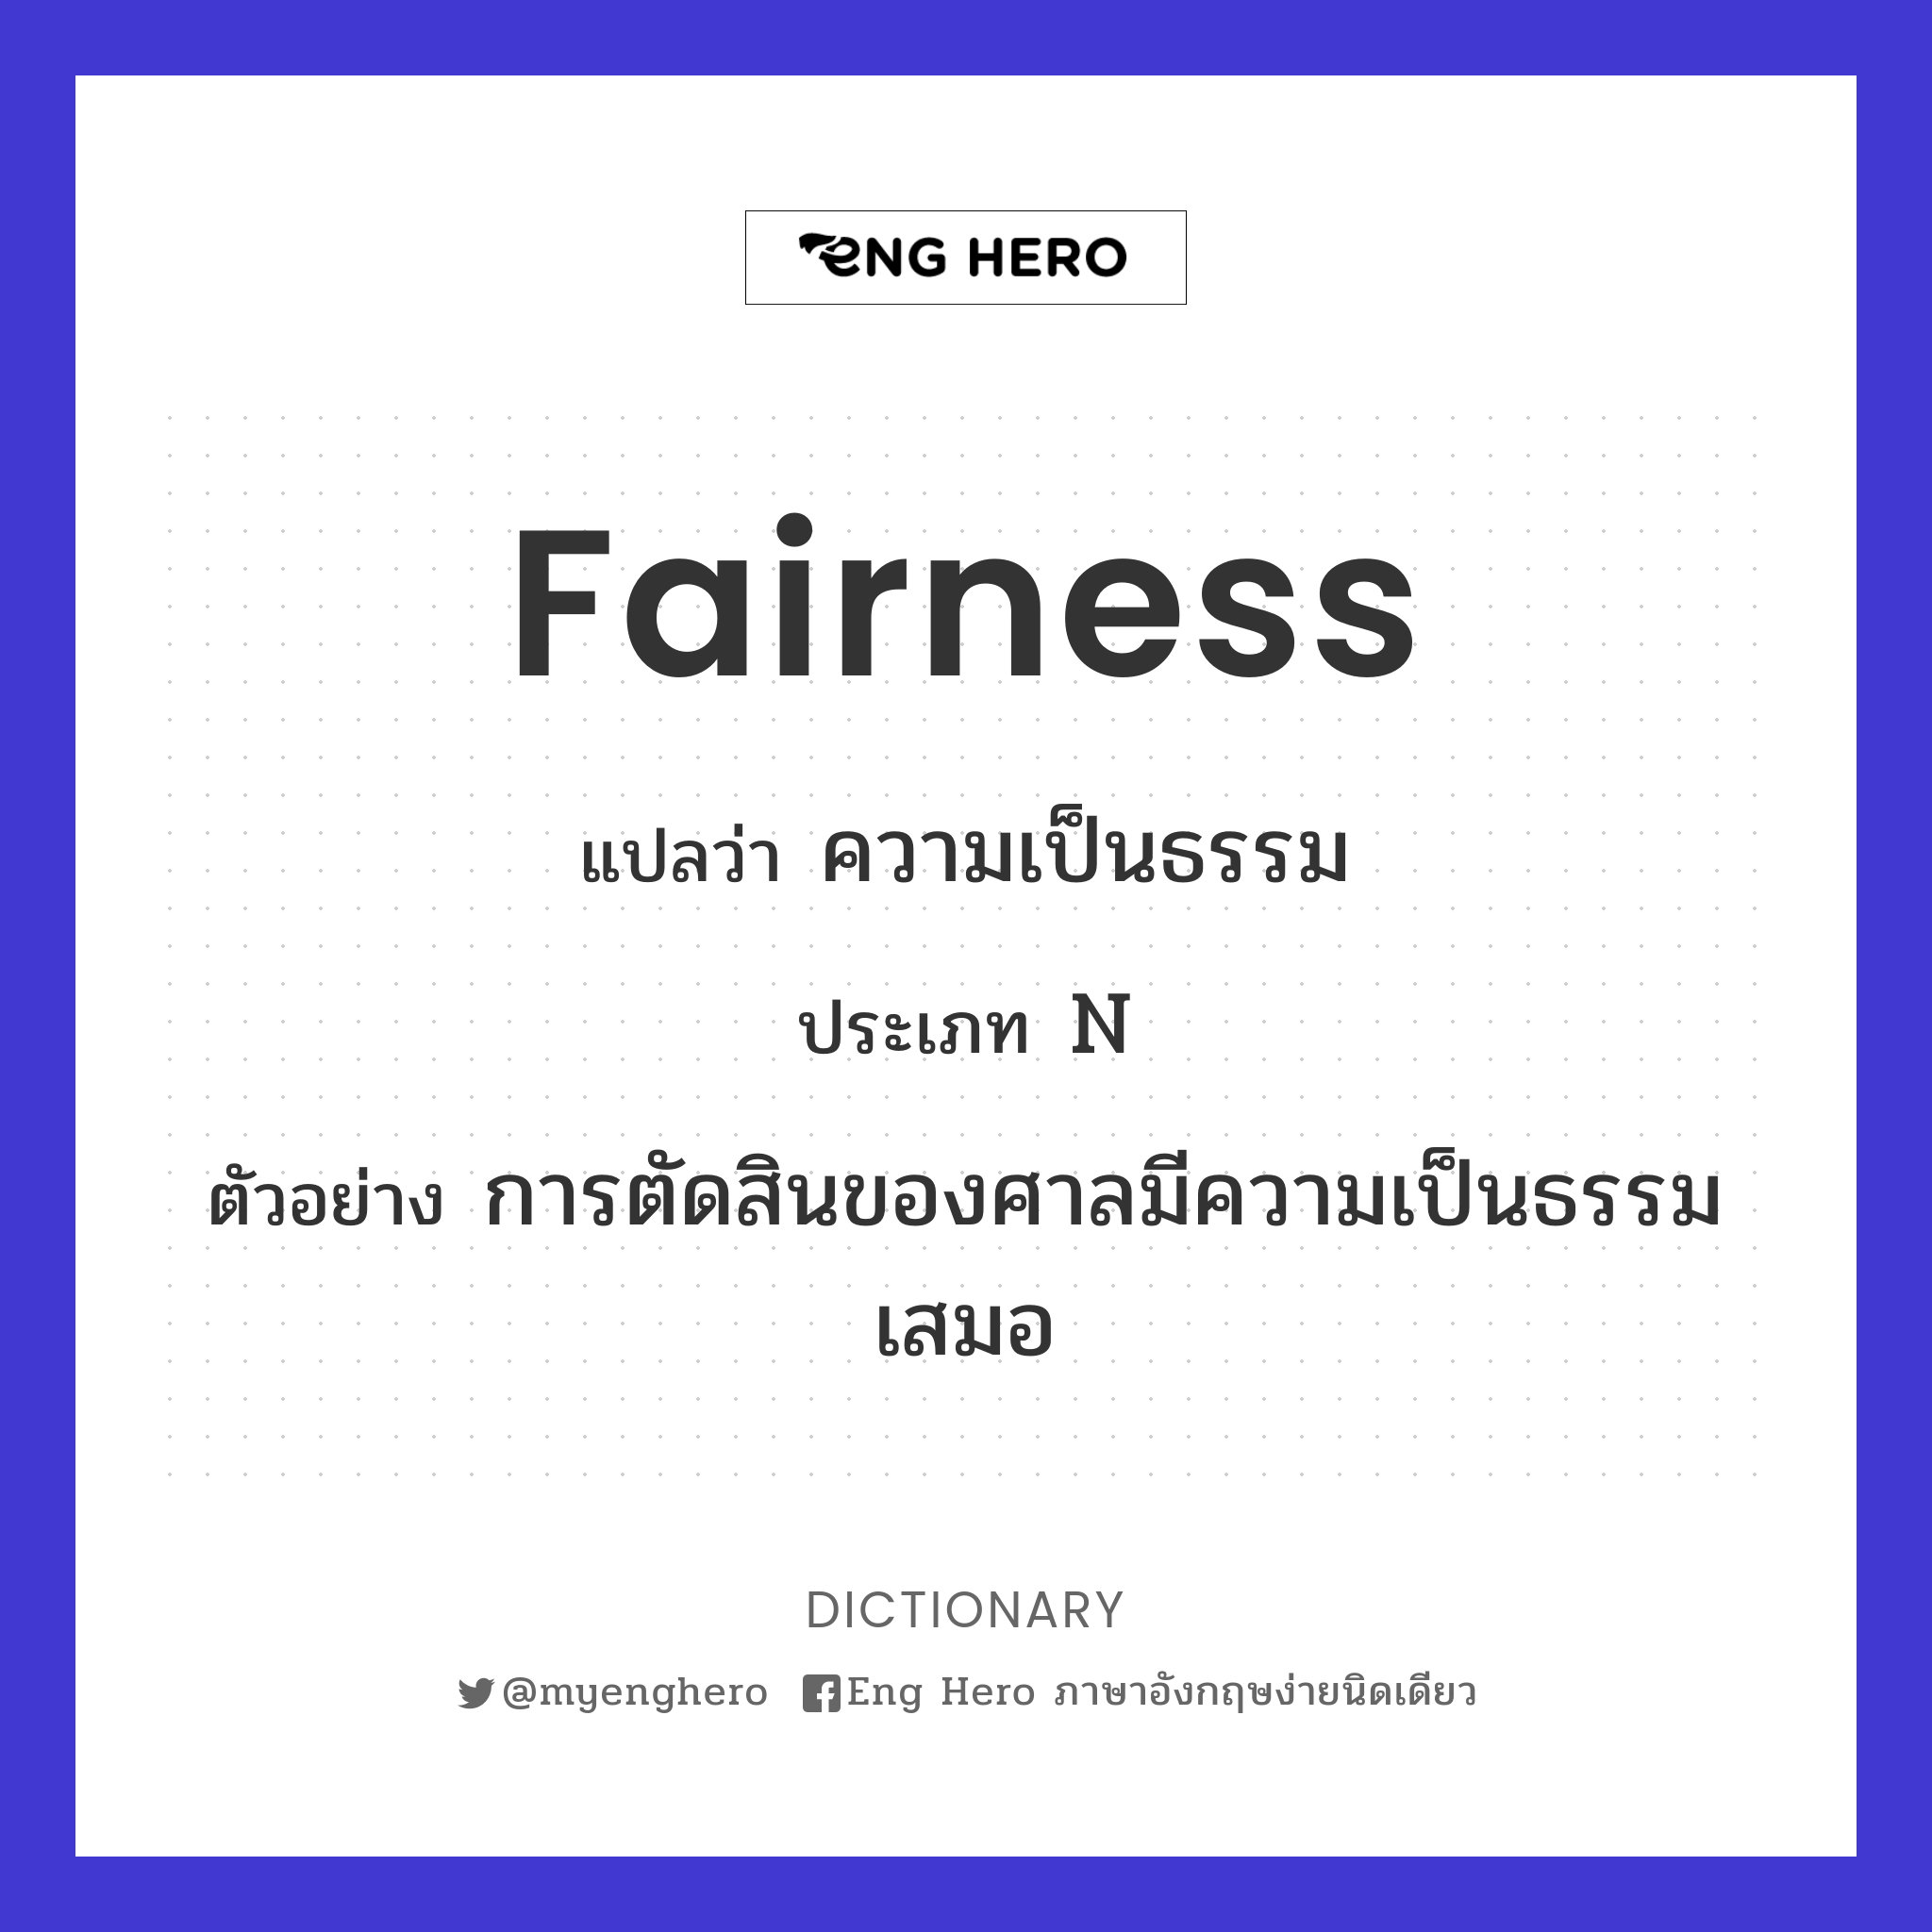 fairness